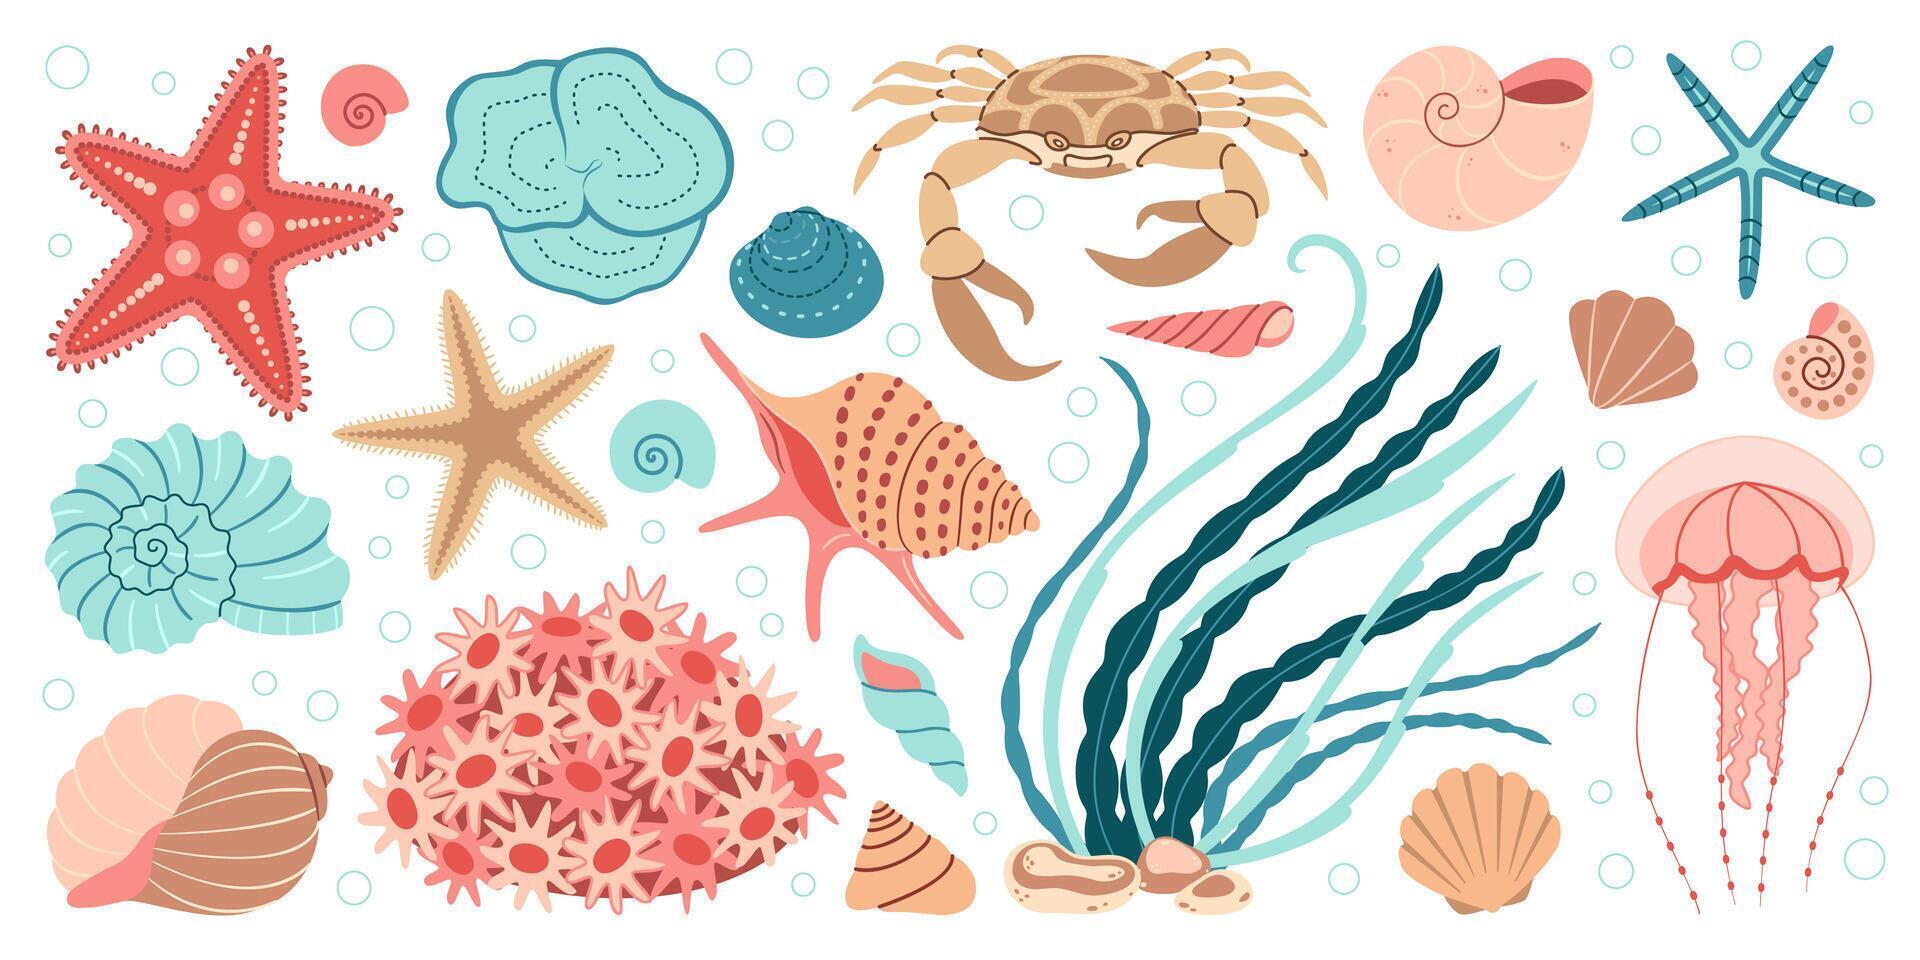 hand dragen tecknad serie hav liv element uppsättning. vatten- djur, anemoner, krabba, manet, alger, snäckskal, sjöstjärna, hav häst. trendig platt klotter uppsättning under vattnet ekosystem illustration vektor